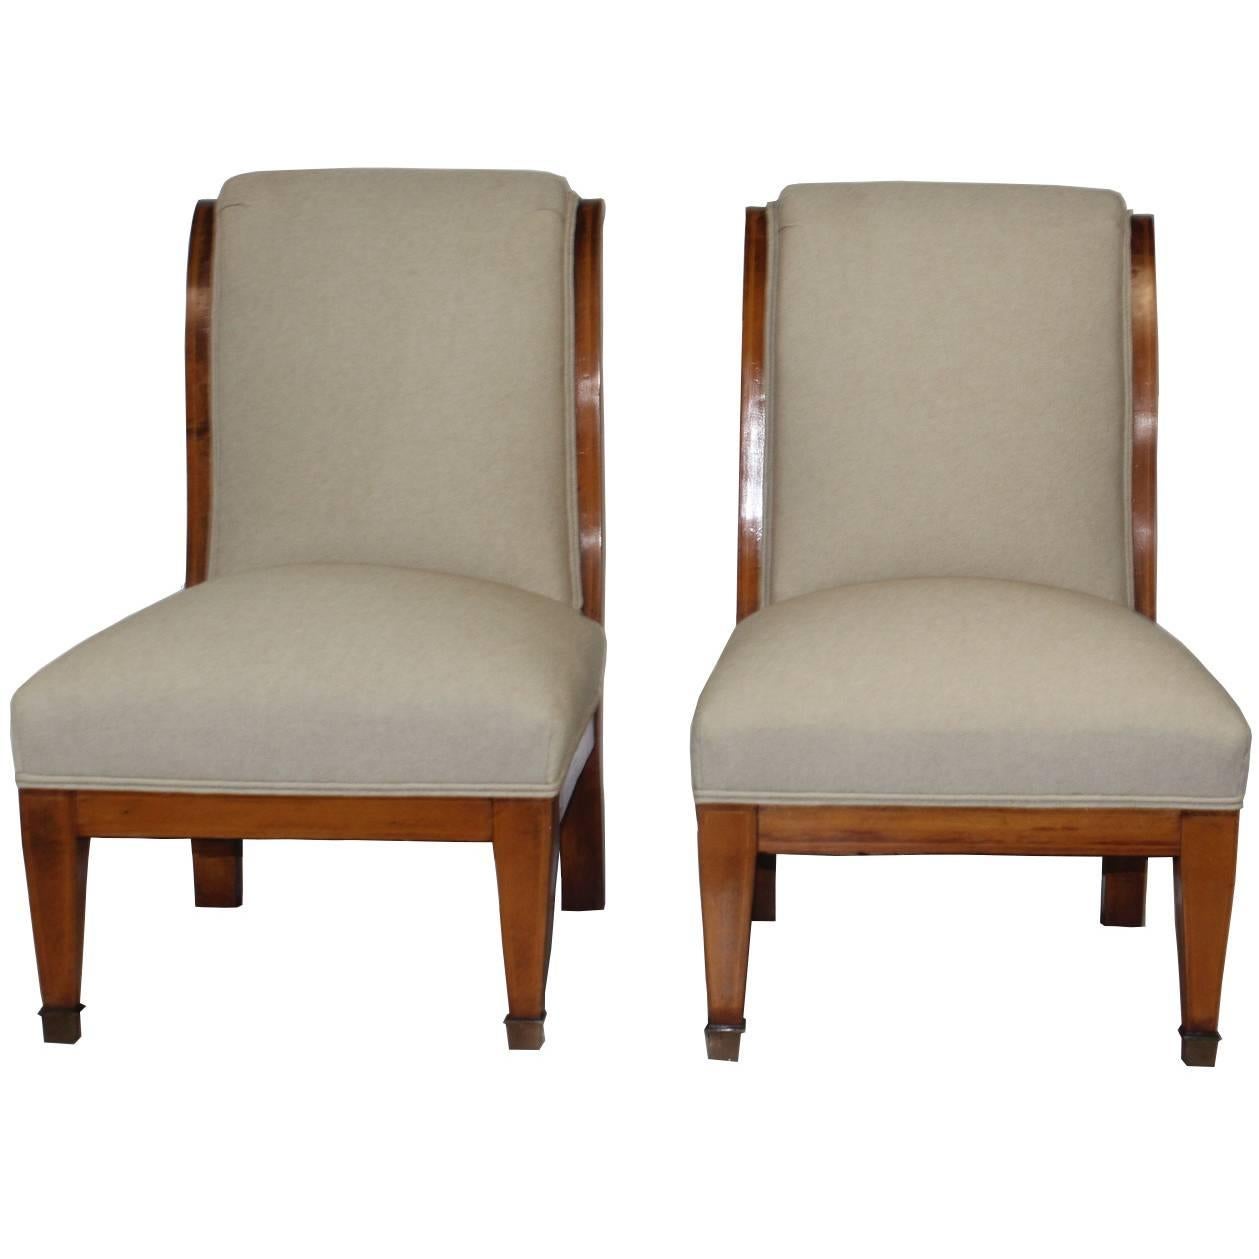 Pair of Biedermeier Style Chairs